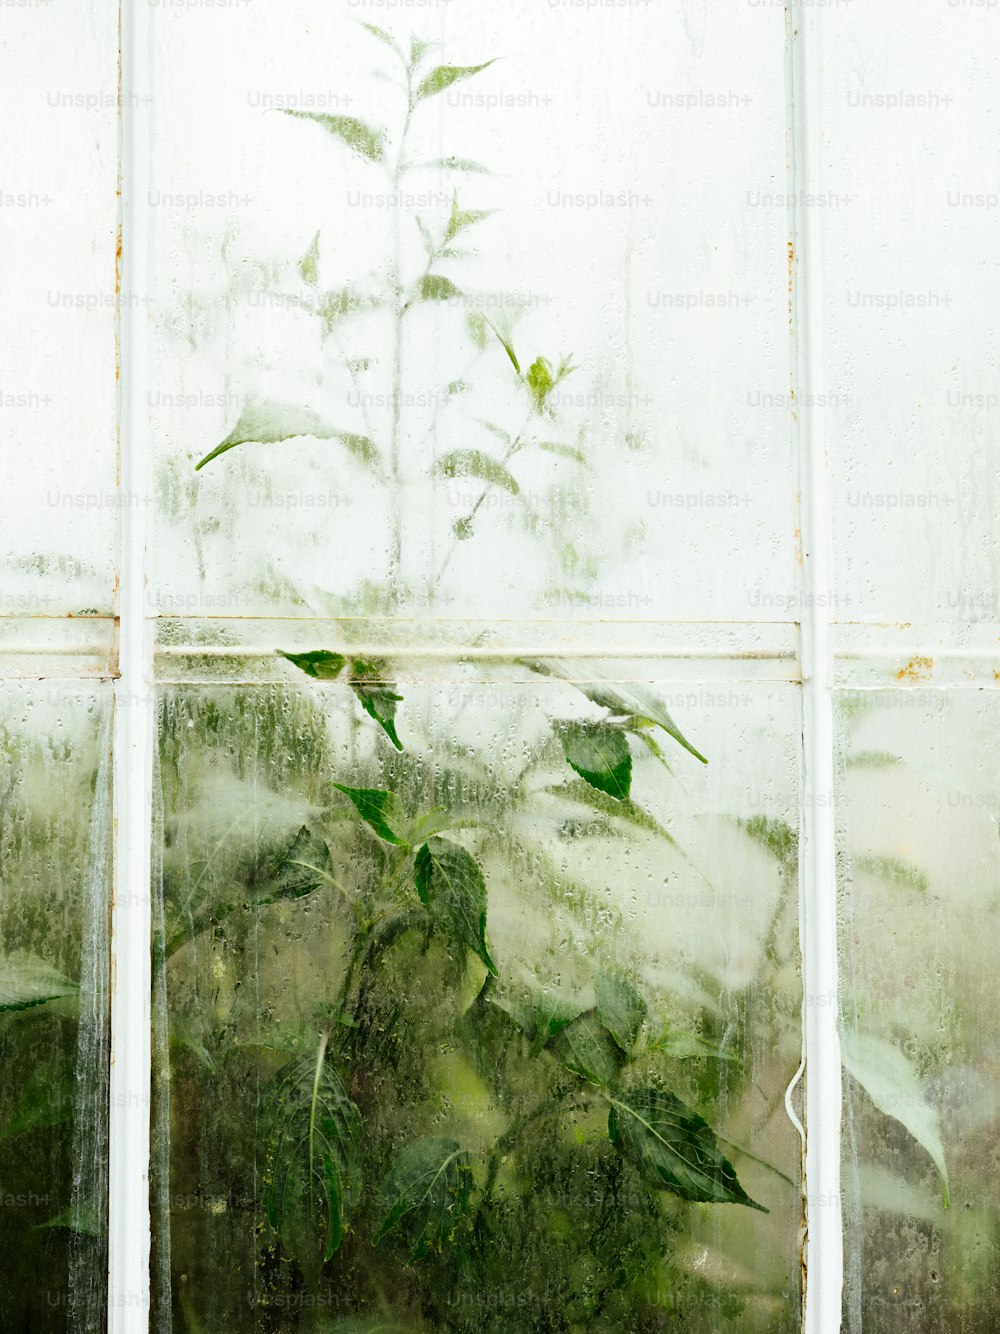 Una planta está creciendo a través del cristal de una ventana